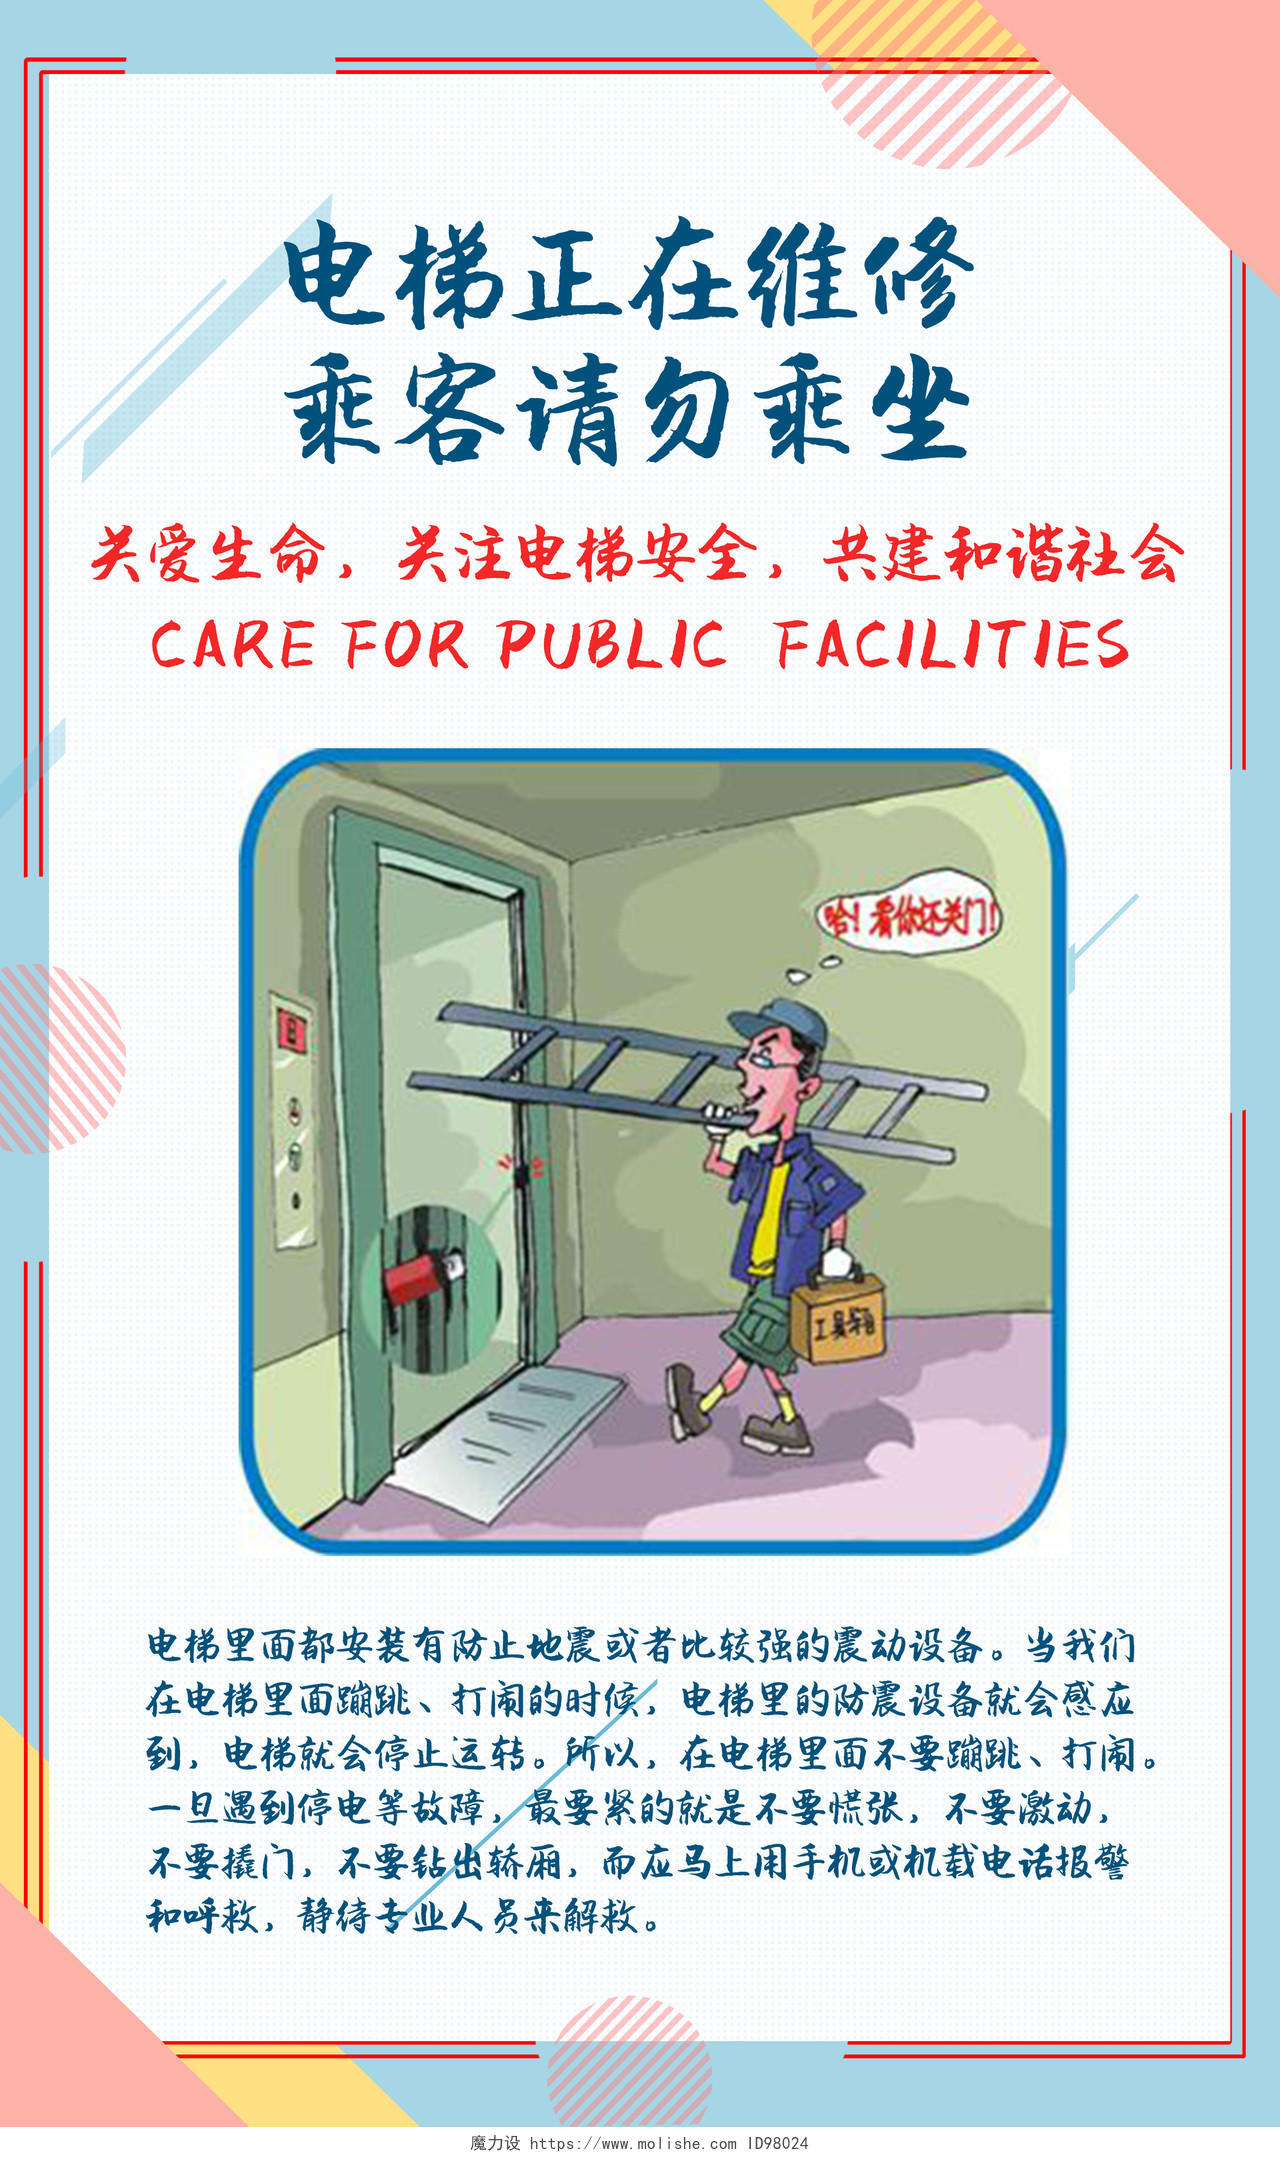 彩色插画请不要在电梯内嬉戏轿厢内禁止粗暴行为电梯安全竖版套图